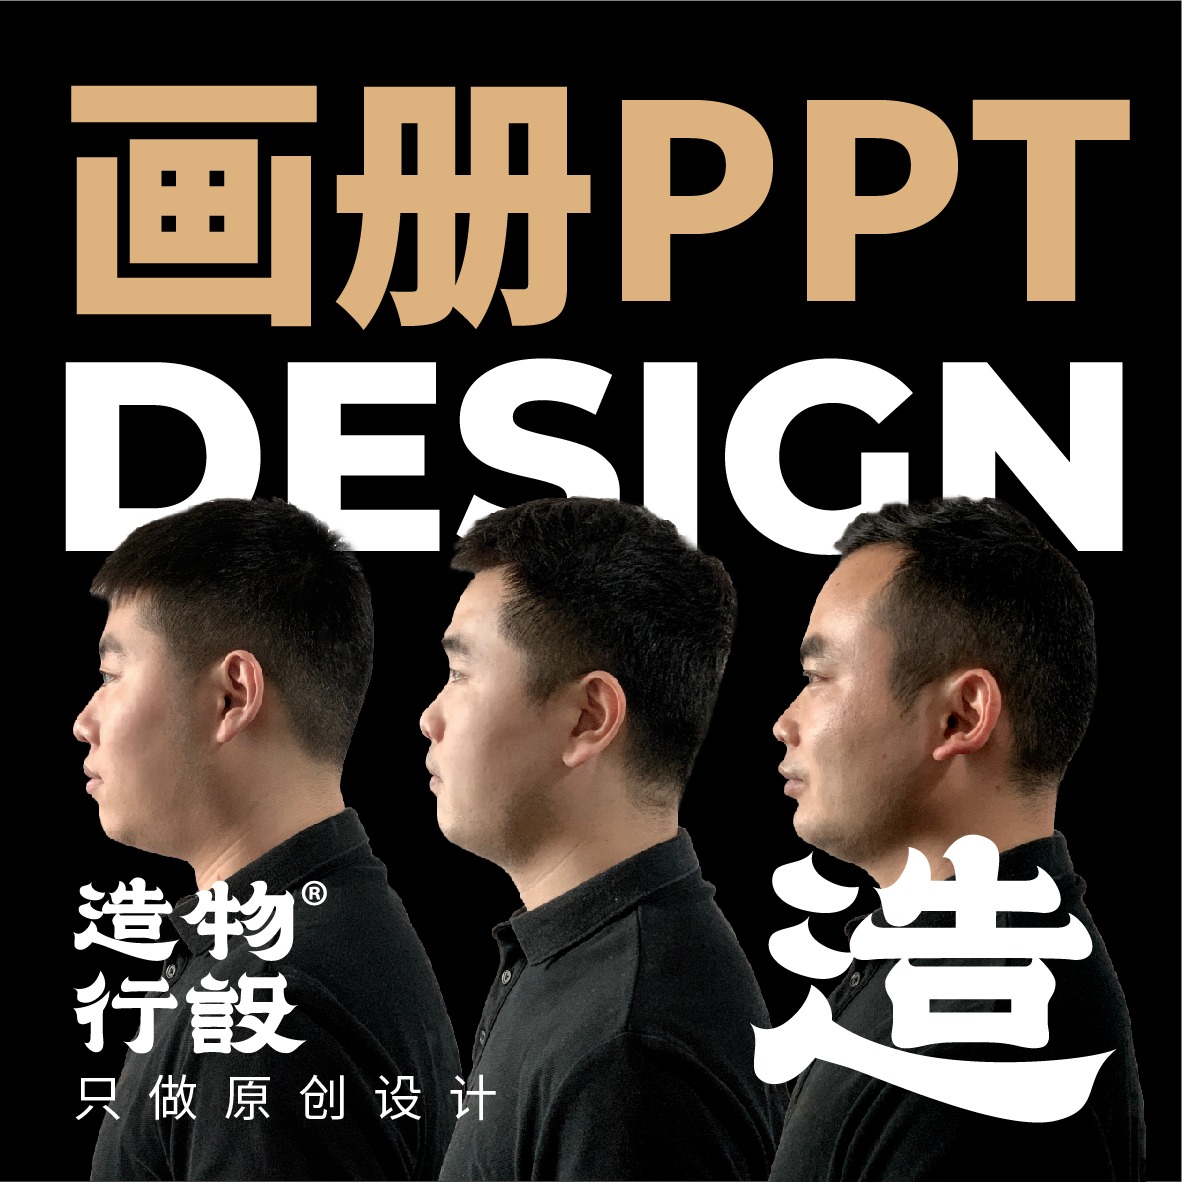 企业画册设计产品手册宣传册设计台历菜单三折页PPT公司排版